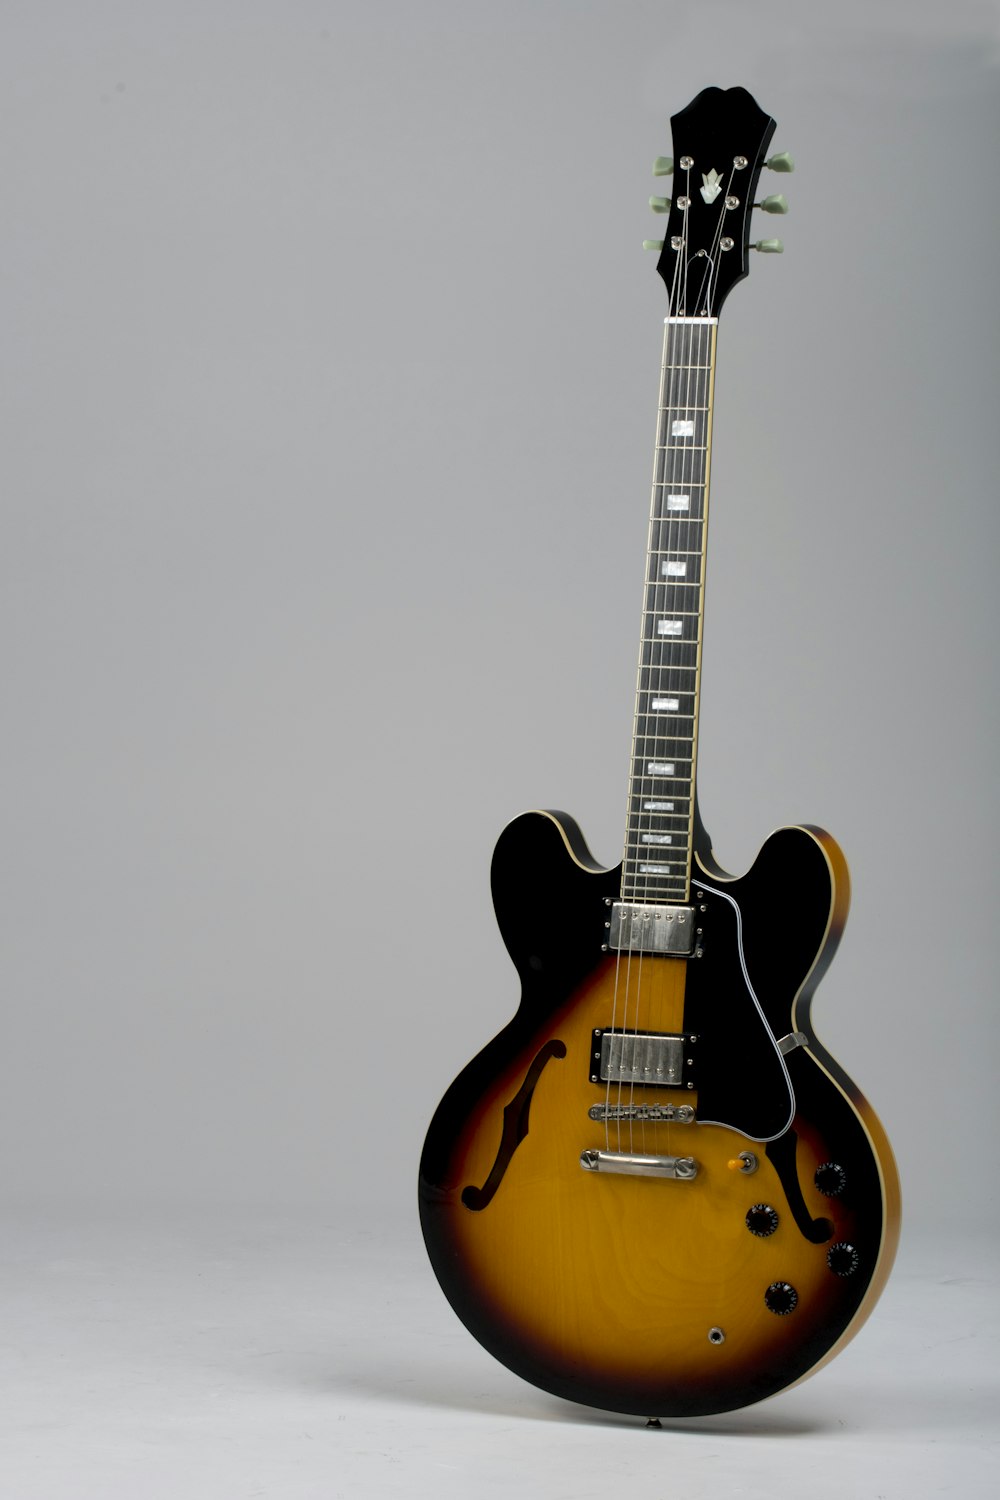 Chitarra elettrica Stratocaster marrone e nera